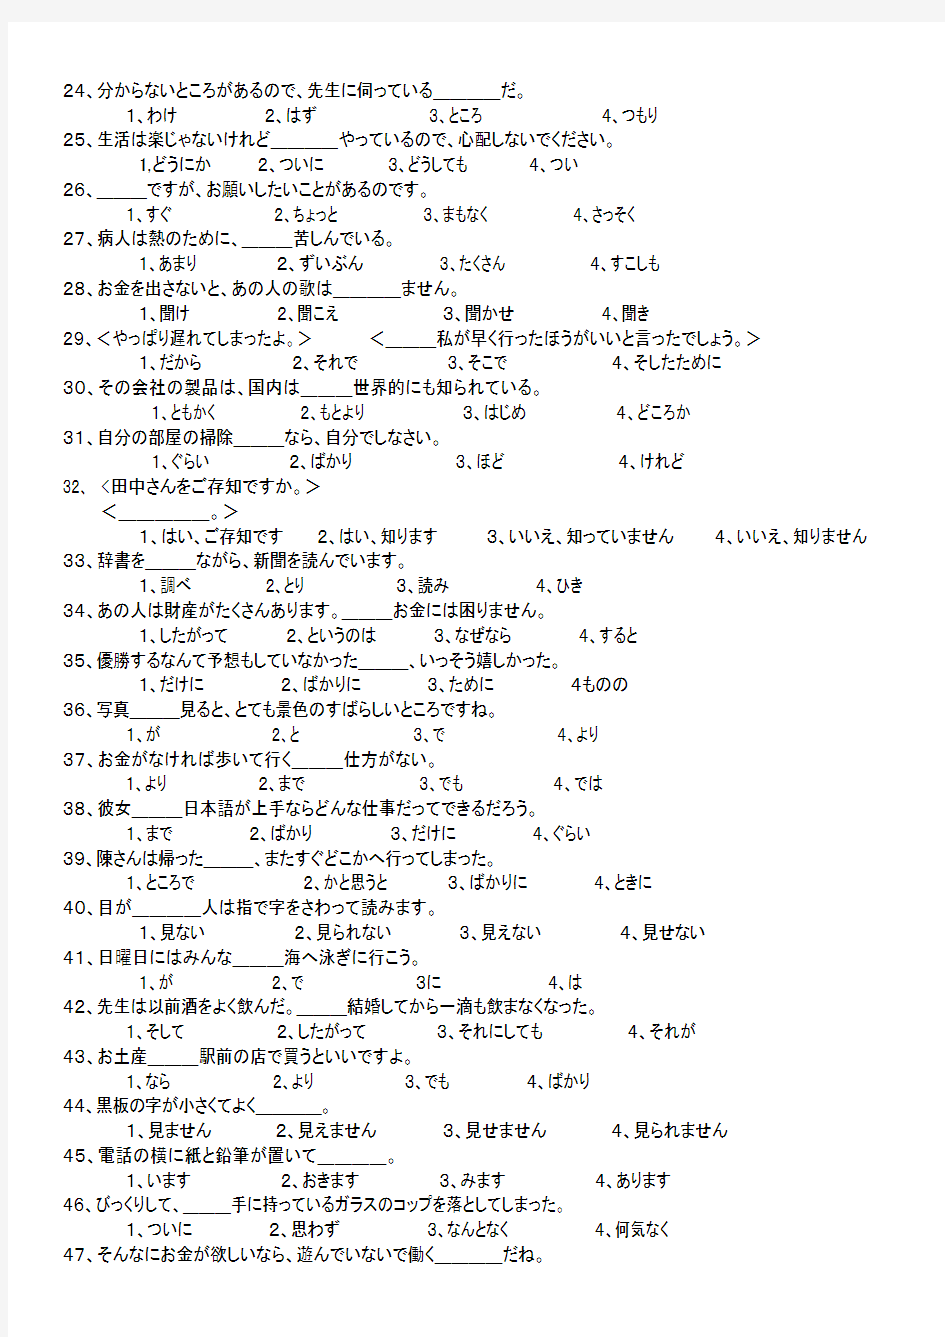 320题日语基础知识归纳与总结